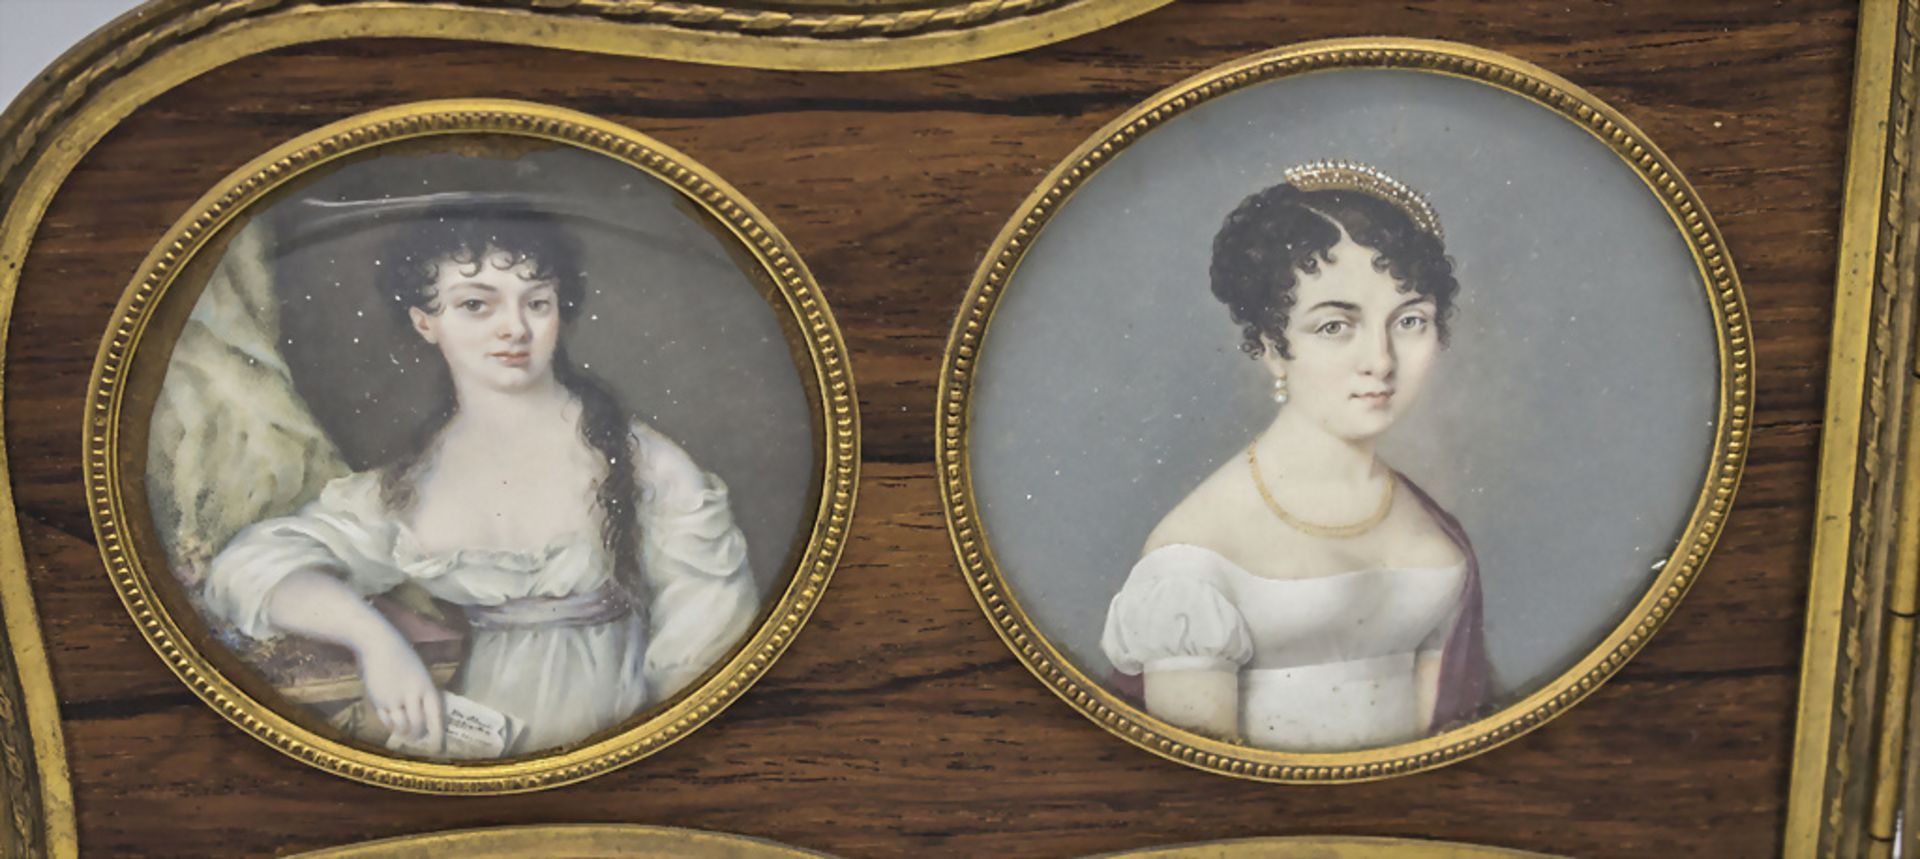 Empire Miniatur Porträts vier junger Damen / Miniature portraits of four young ladies, ... - Bild 2 aus 5